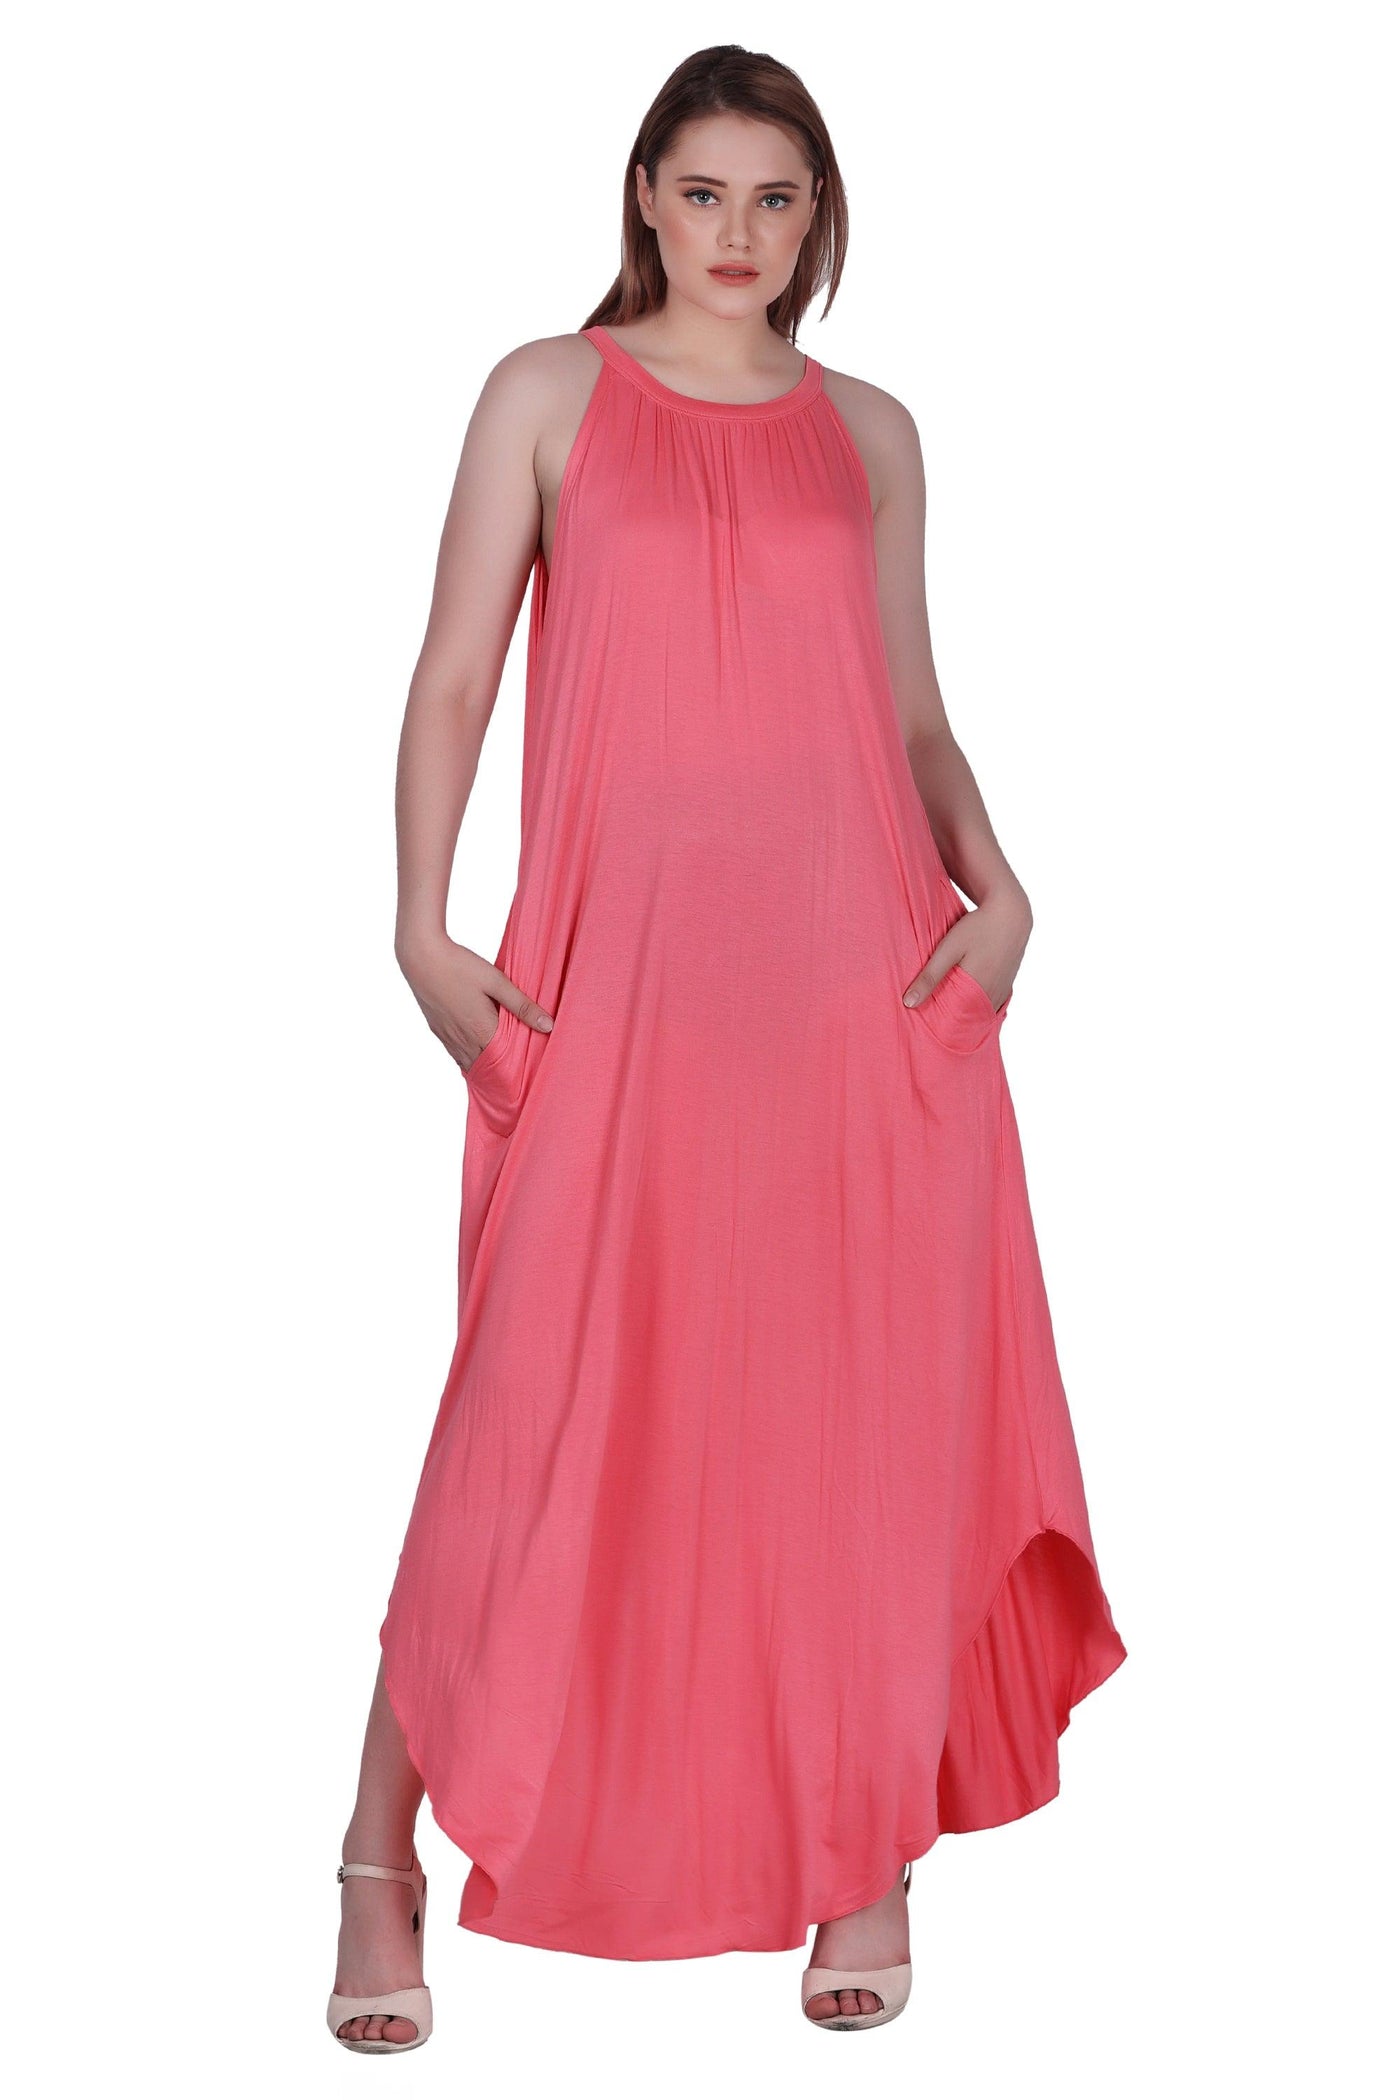 Solid Color Dress 30329  - Advance Apparels Inc